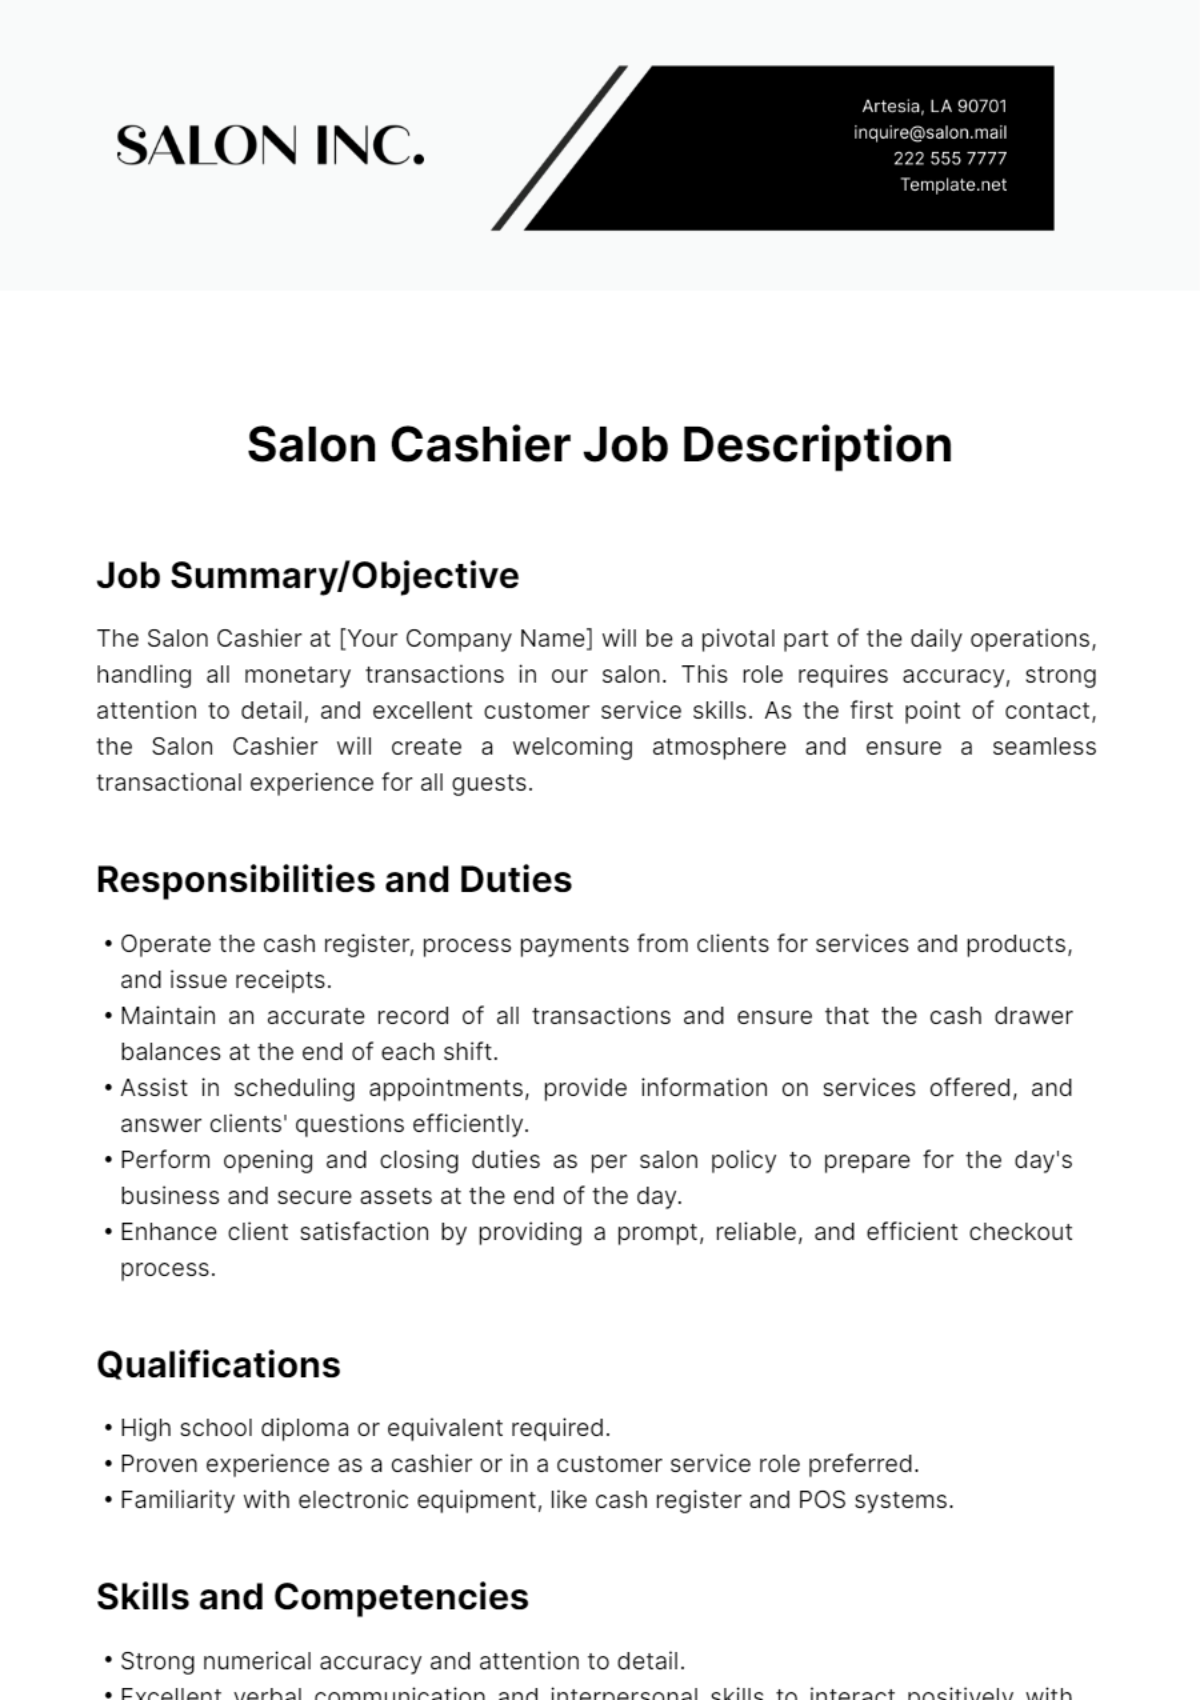 Salon Cashier Job Description Template